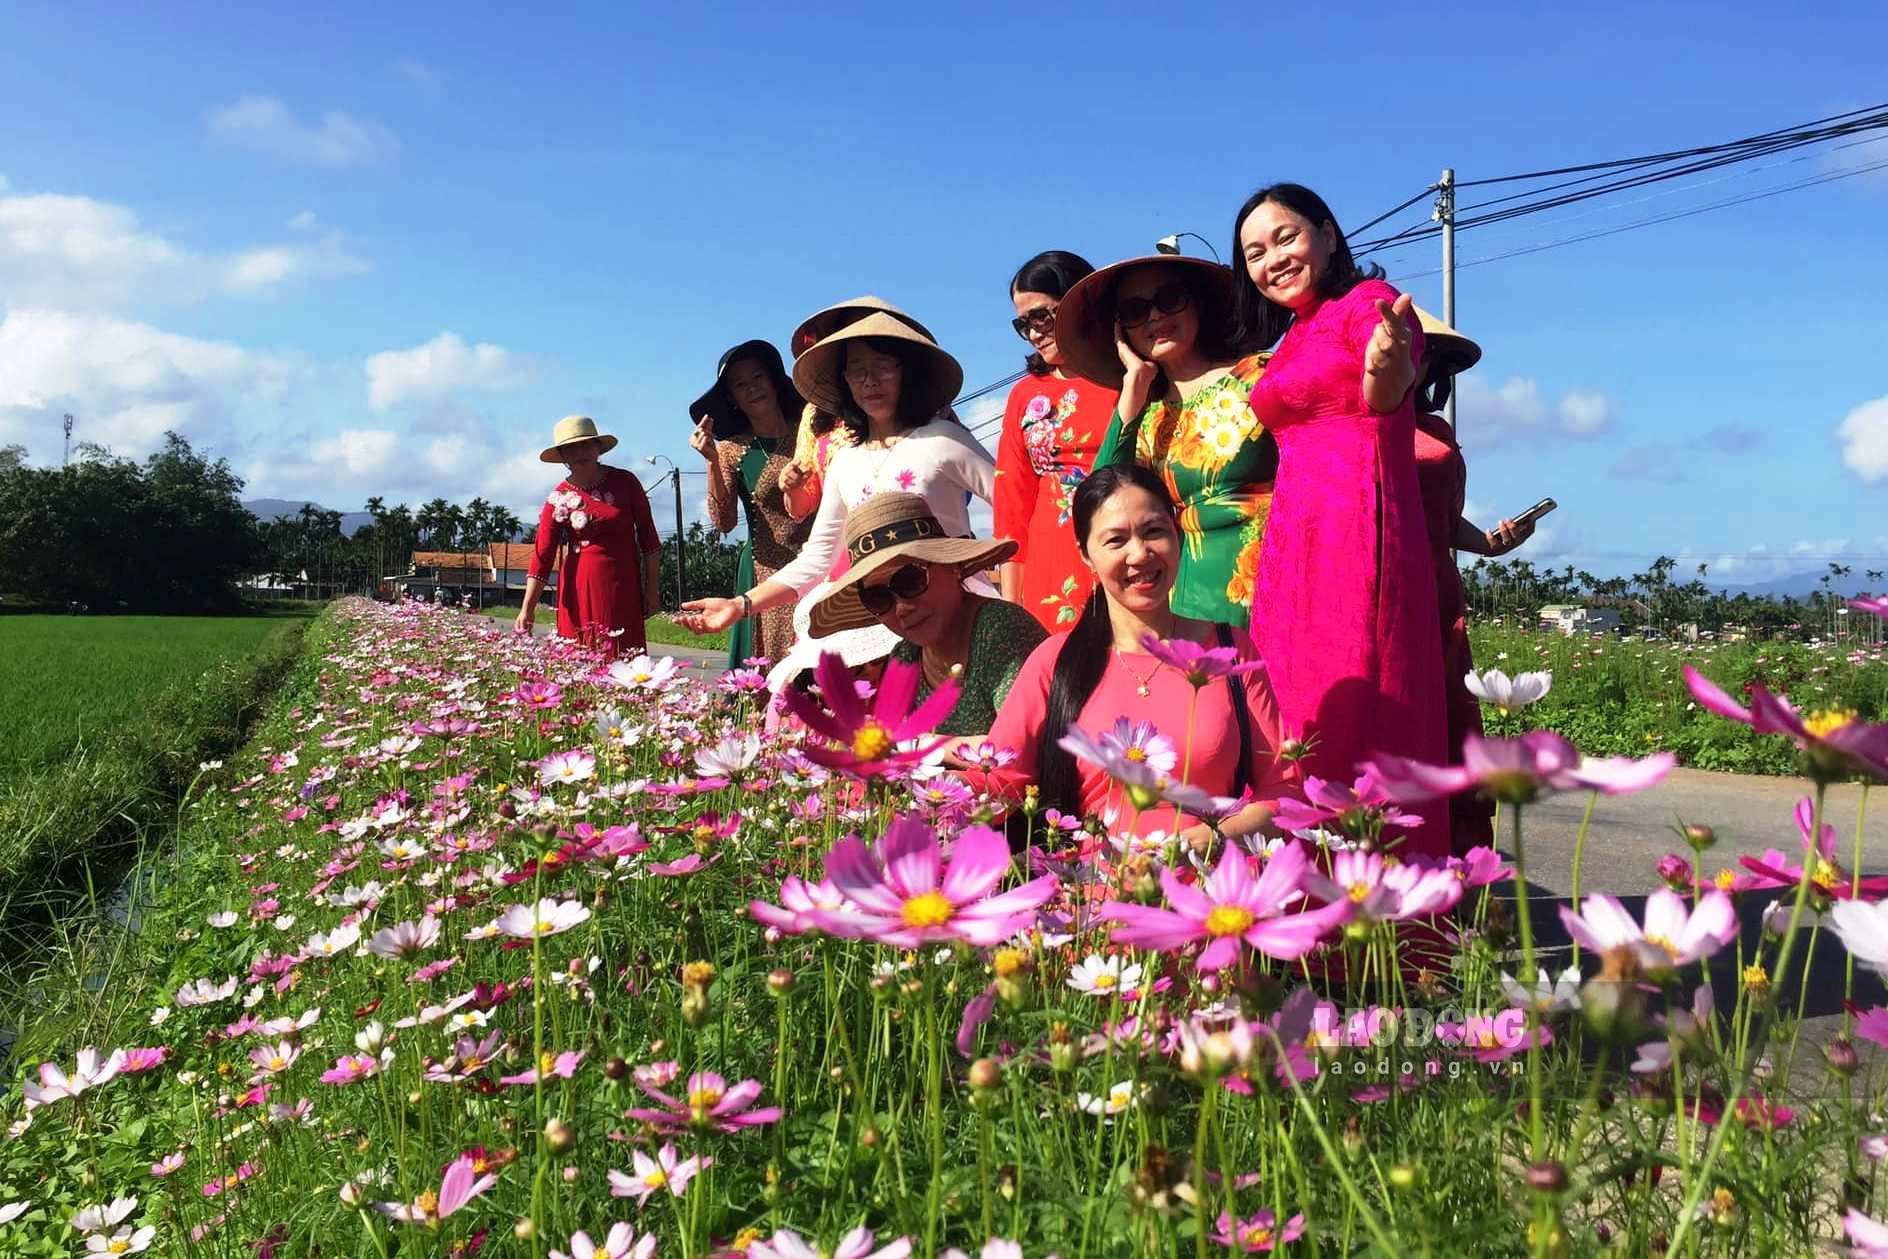 Ngoài hoa cải, Hội phụ nữ xã Đức Hòa, huyện Mộ Đức còn trồng hoa nhái, hoa cánh bướm trên các tuyến đường, kéo dài hơn 1km để làm đẹp cho làng quê vào dịp Tết Nguyên đán. Ảnh: Ngọc Viên